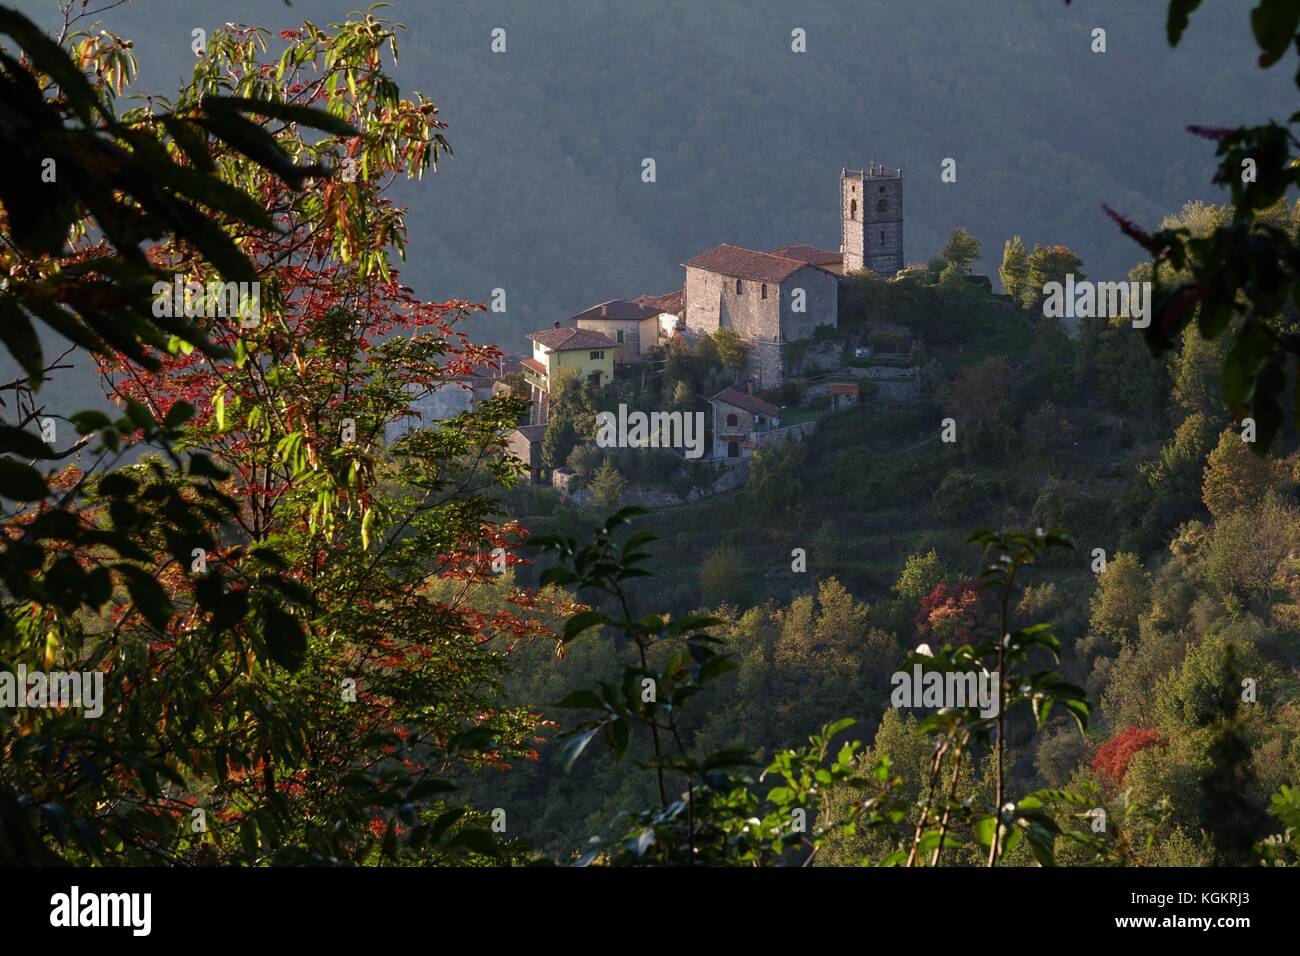 Village in Tuscany, Italy Stock Photo